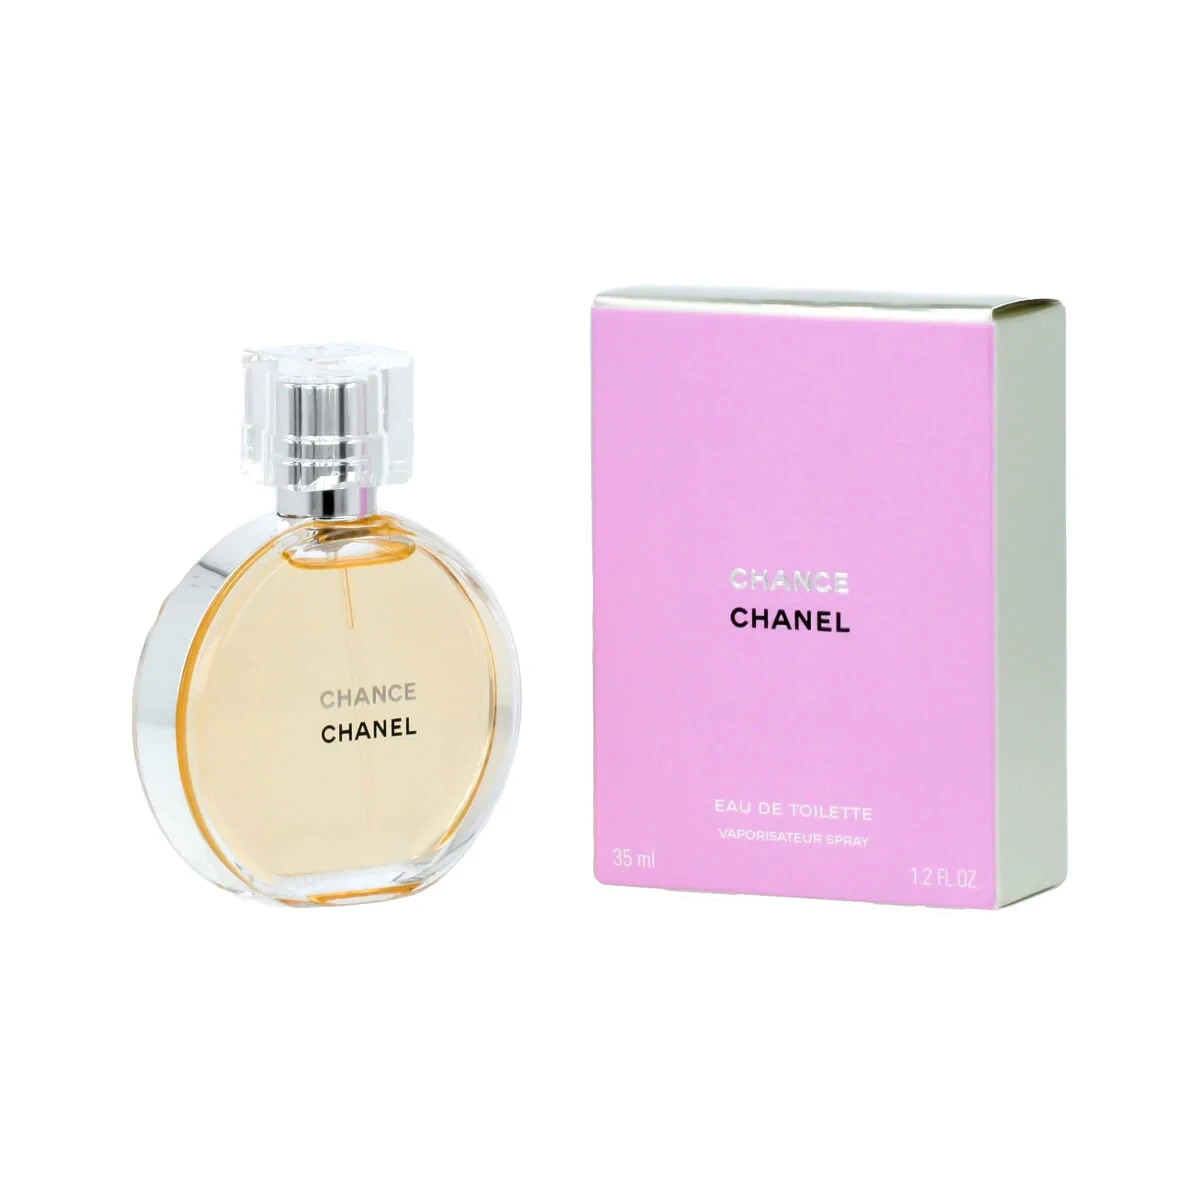 Chanel - Chance Eau De Toilette Vaporizador Chanel 35 ml